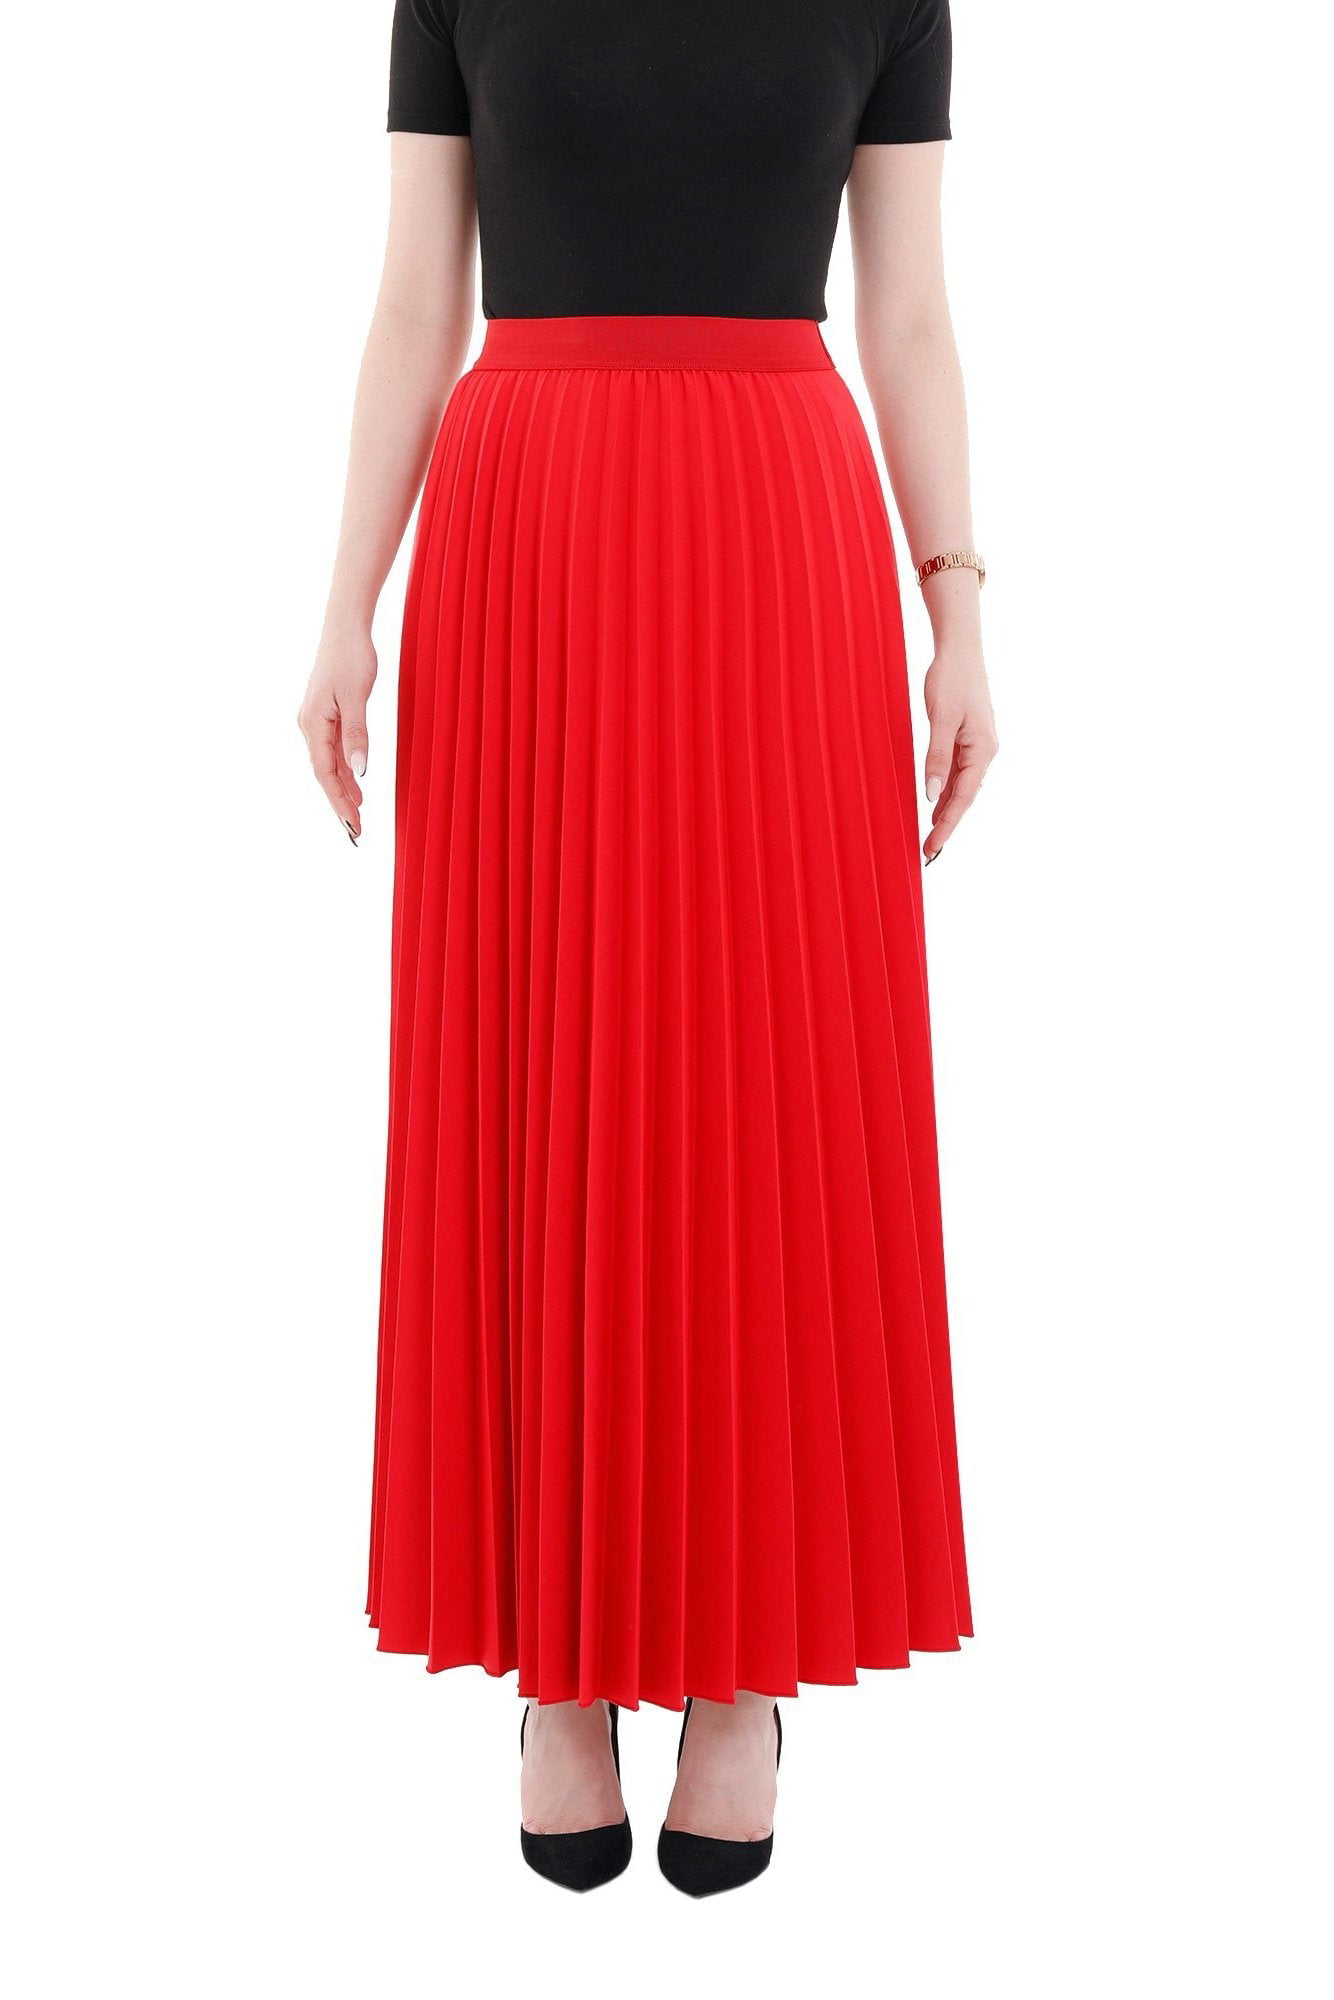 Red Pleated Skirt Elastic Waist Ankle Length Skirt - Walmart.com